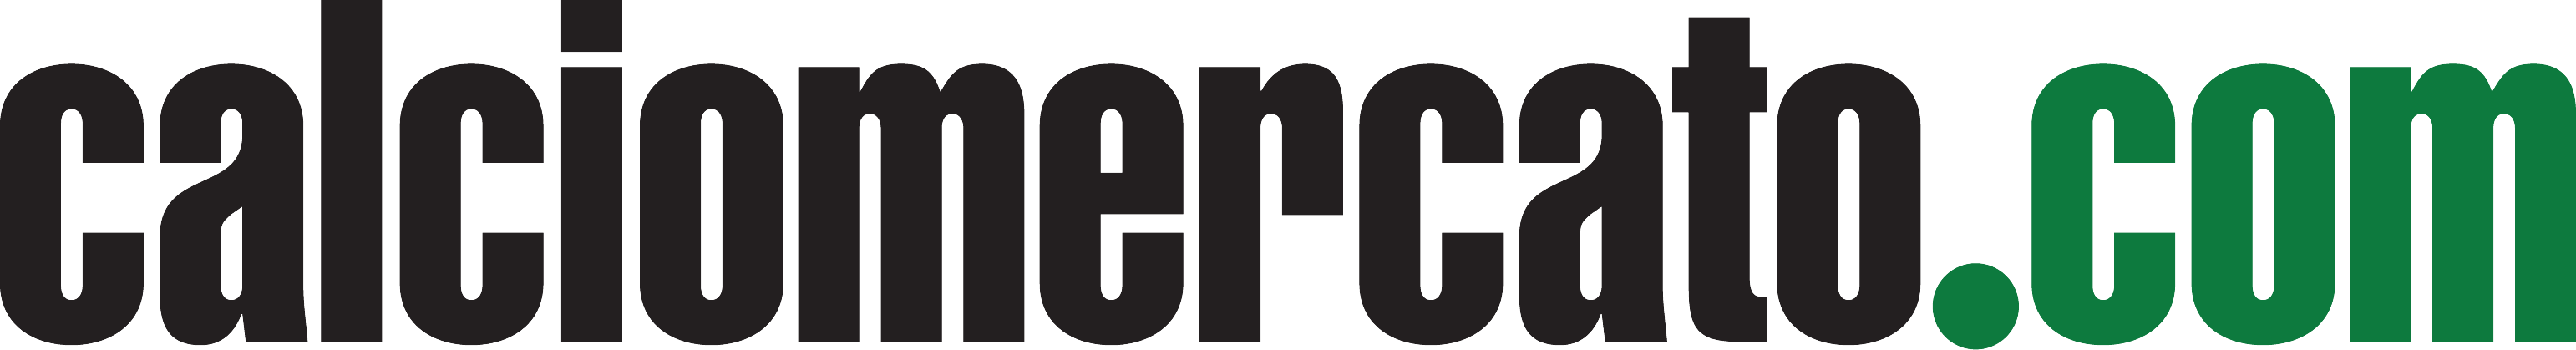 Logo-Calciomercato.com_